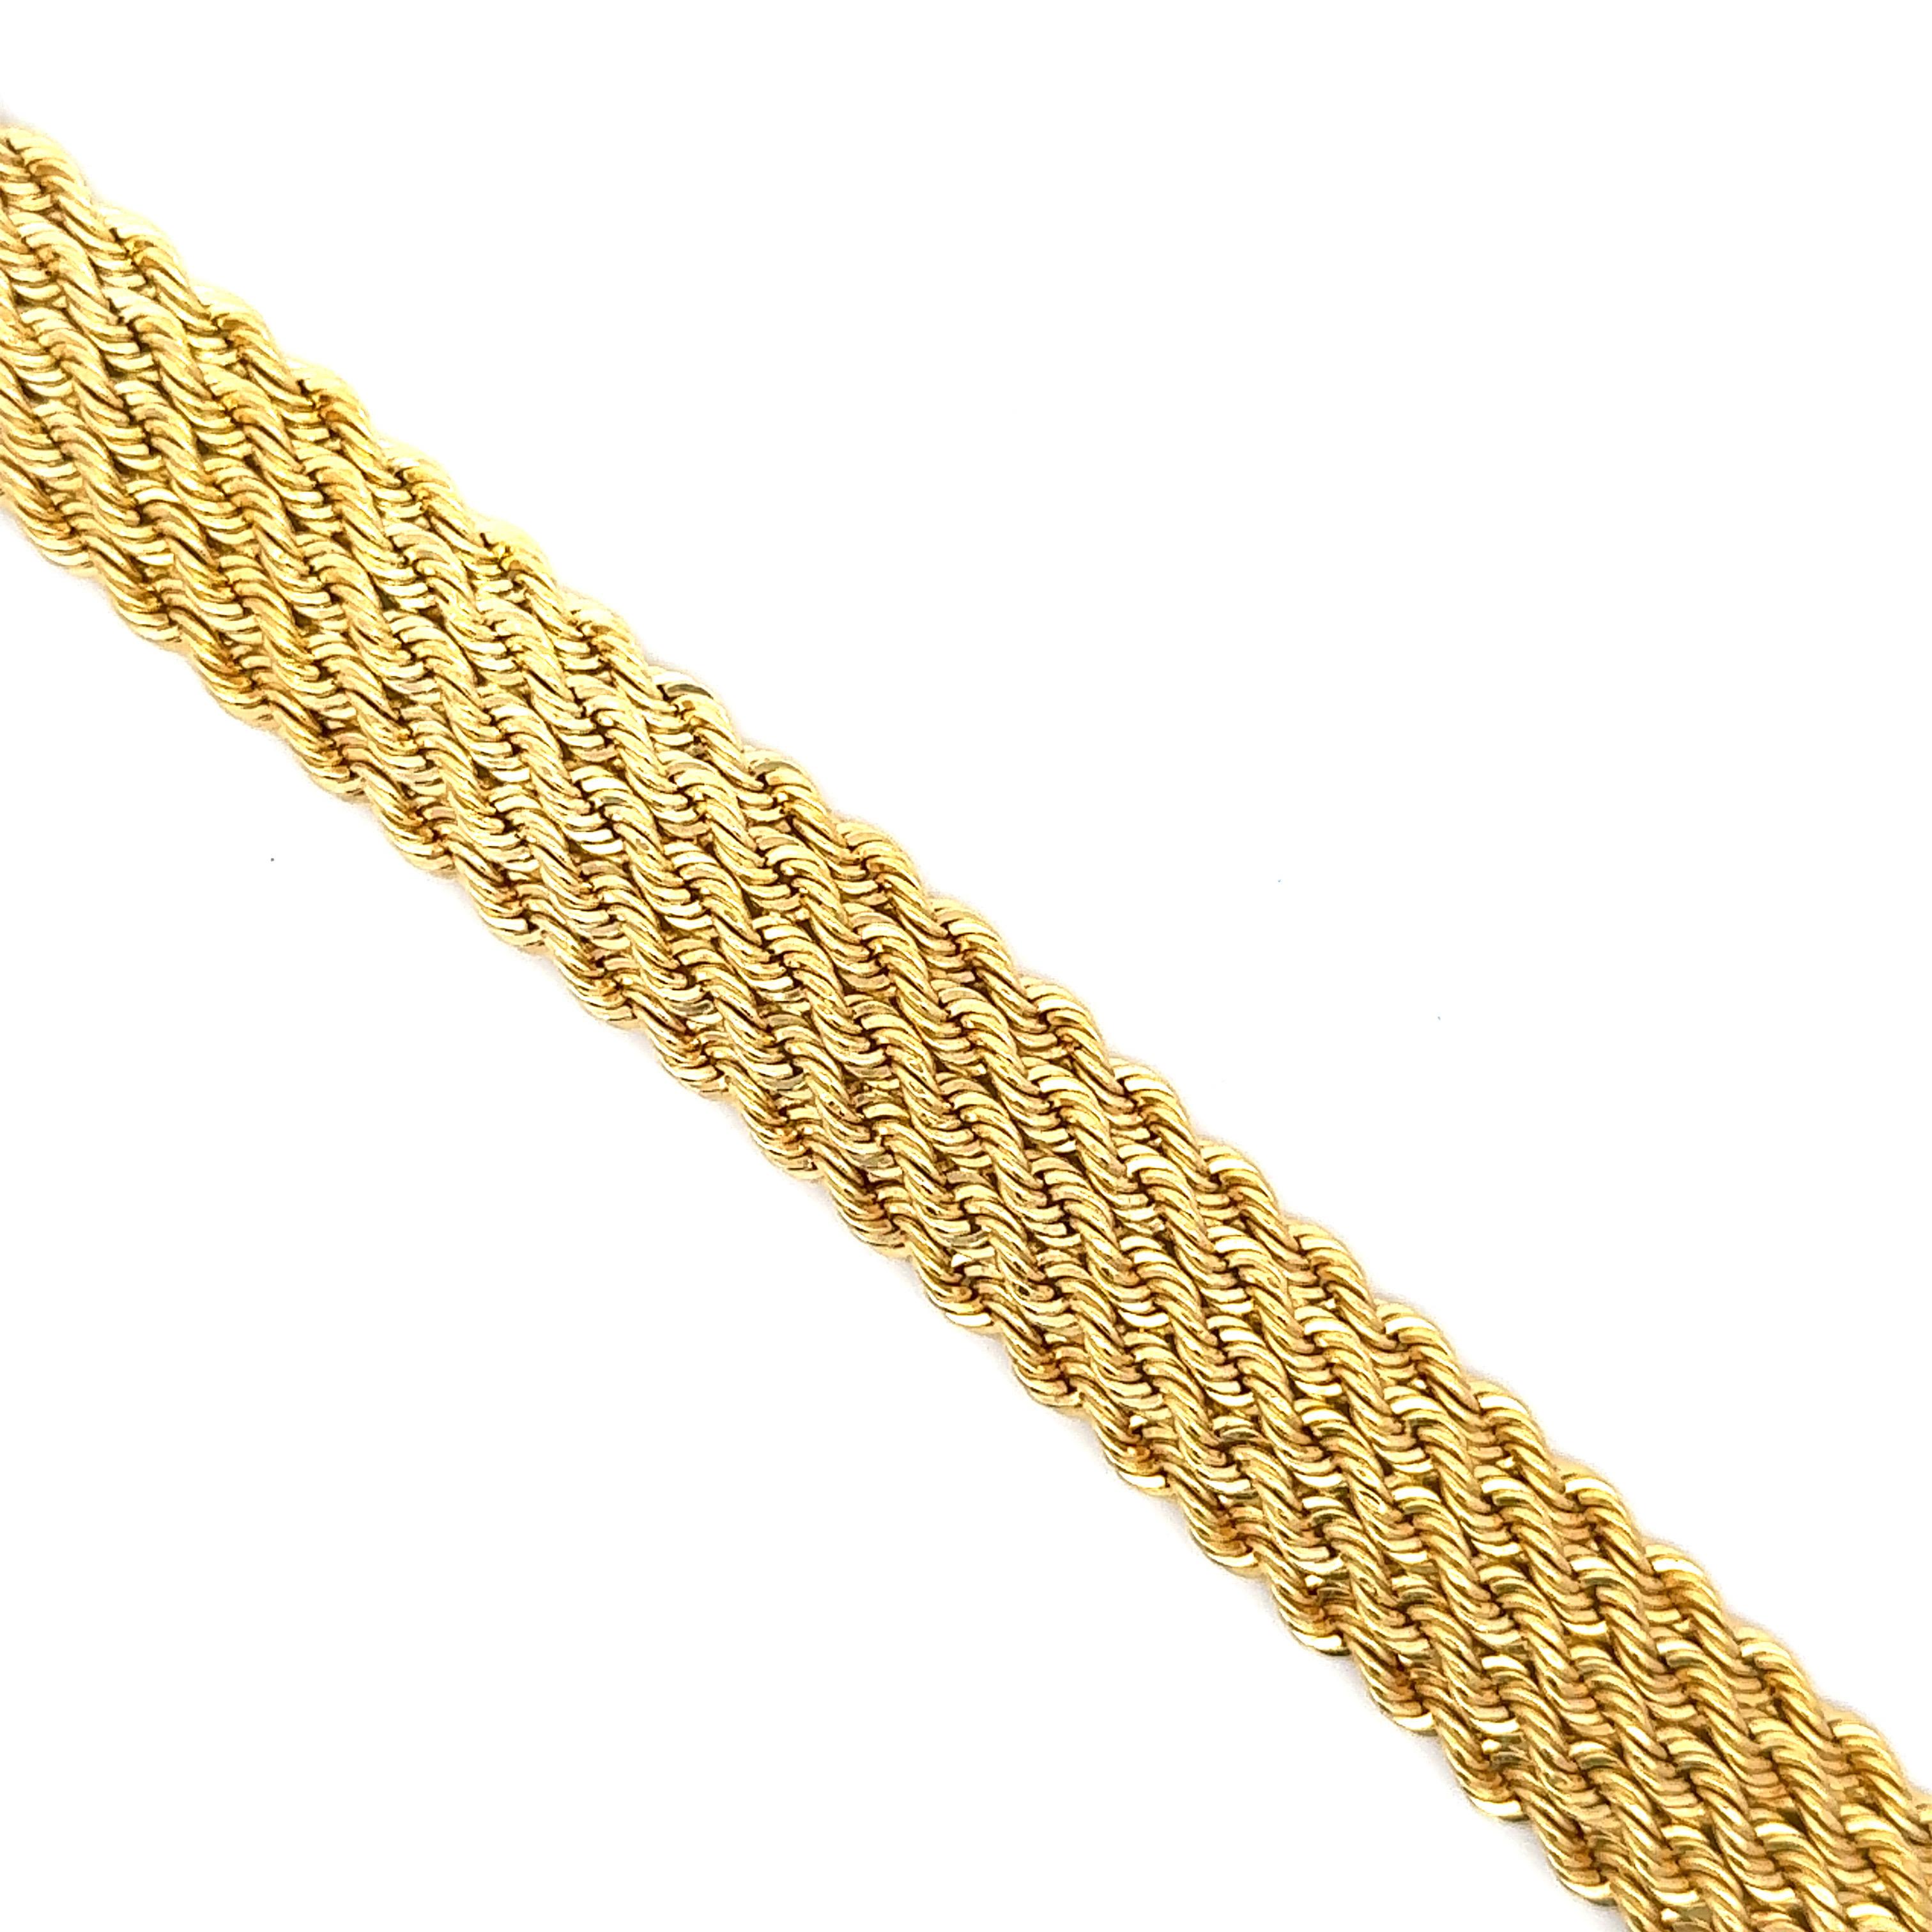 Bracelet en or jaune 14 carats avec motif torsadé tressé pesant 21,1 grammes. 
Plus de bracelets à maillons en stock
Recherche Harbor Diamonds